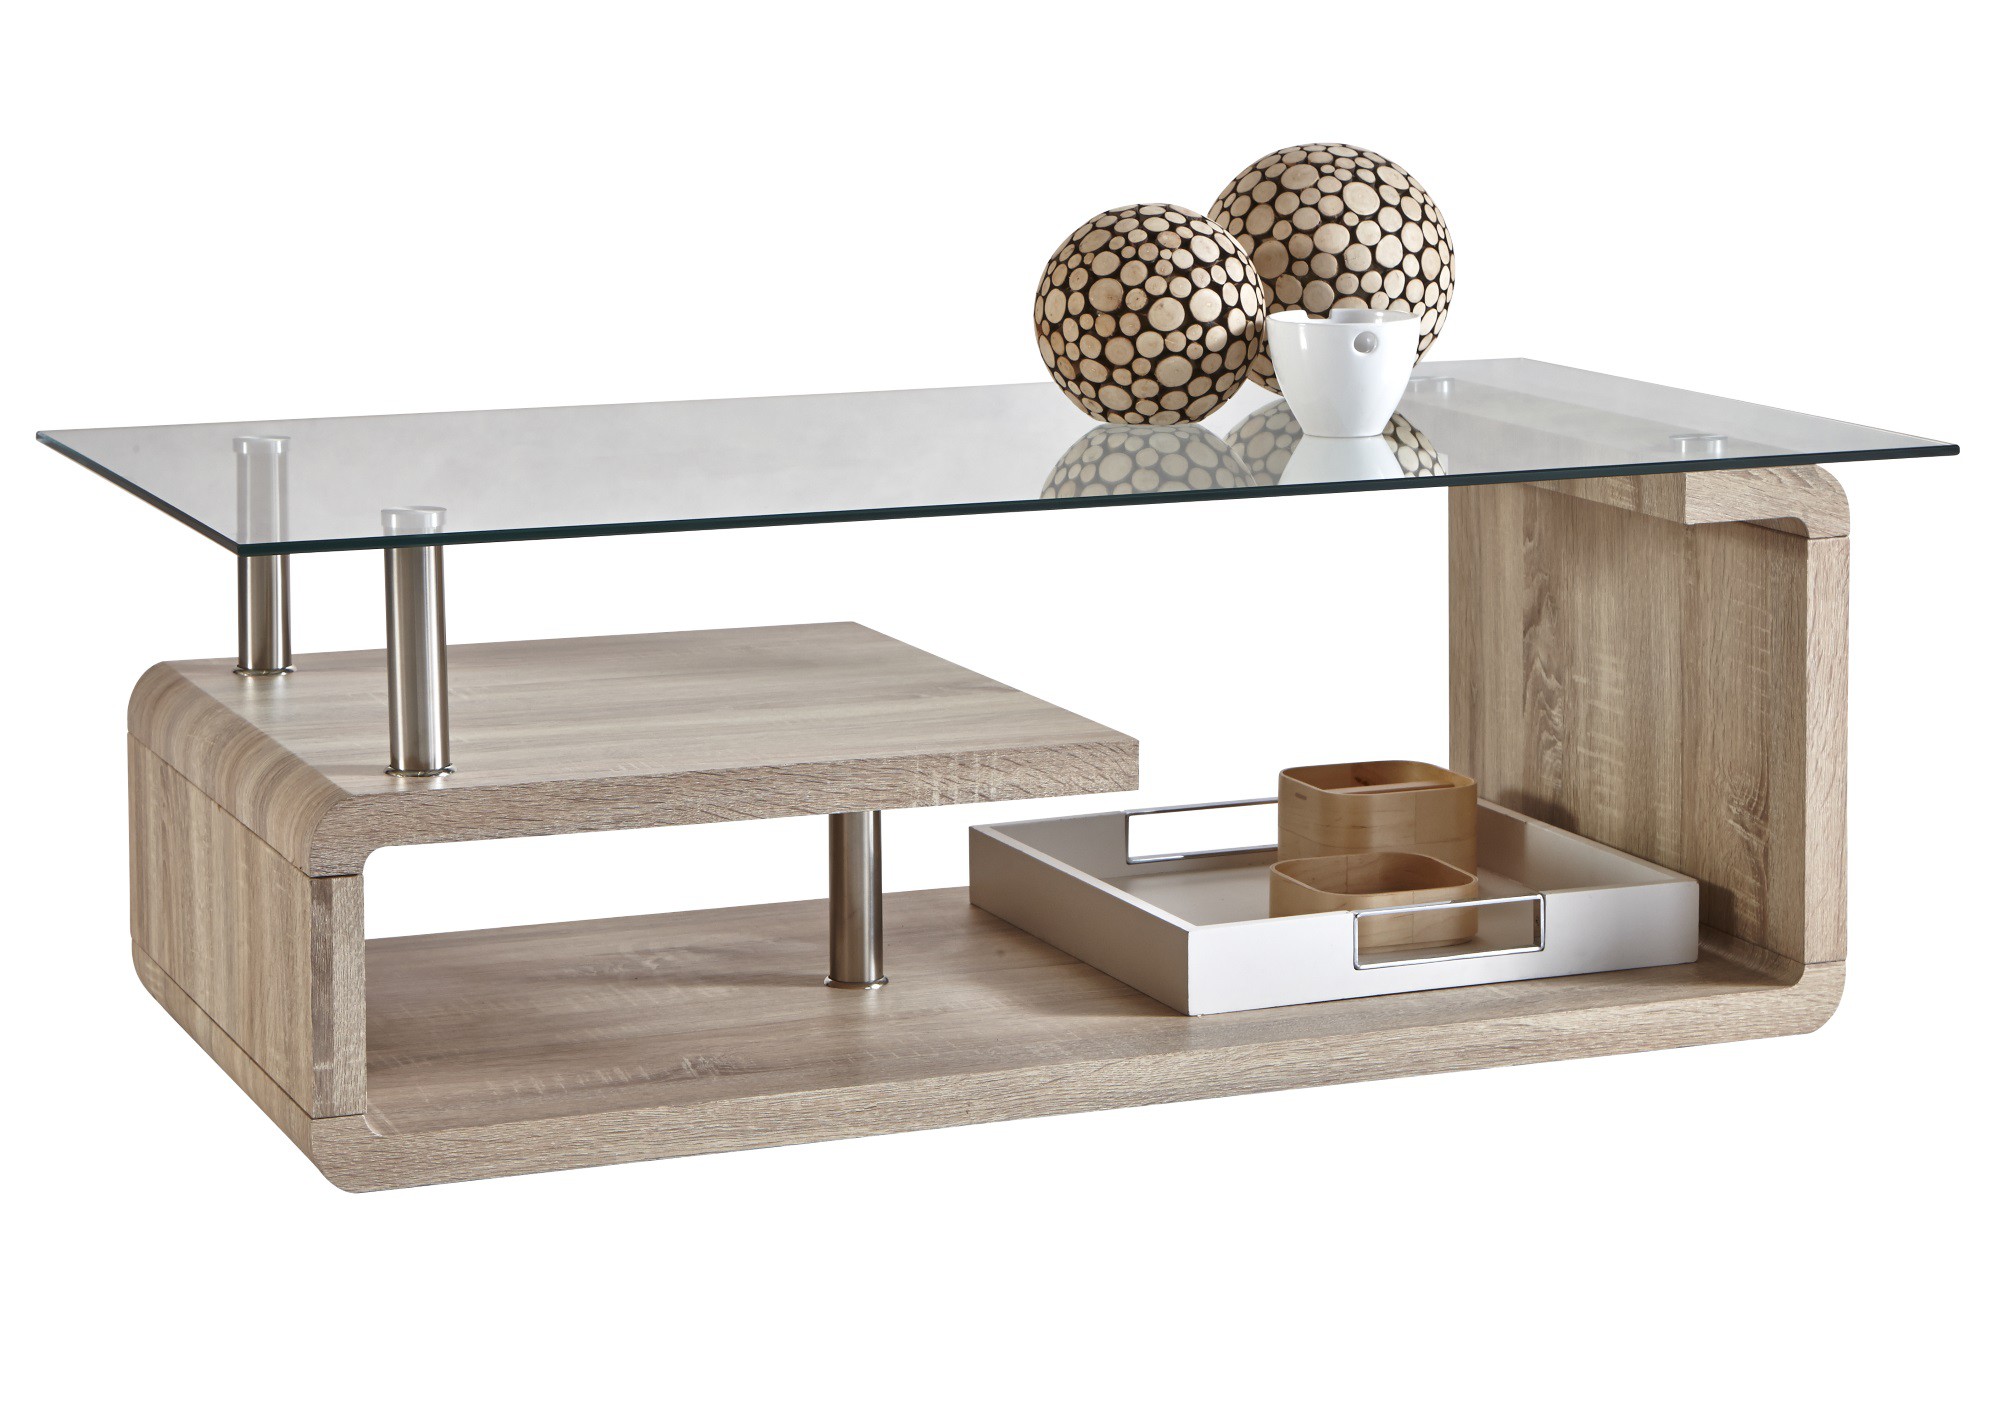 Petite table basse bois et blanc